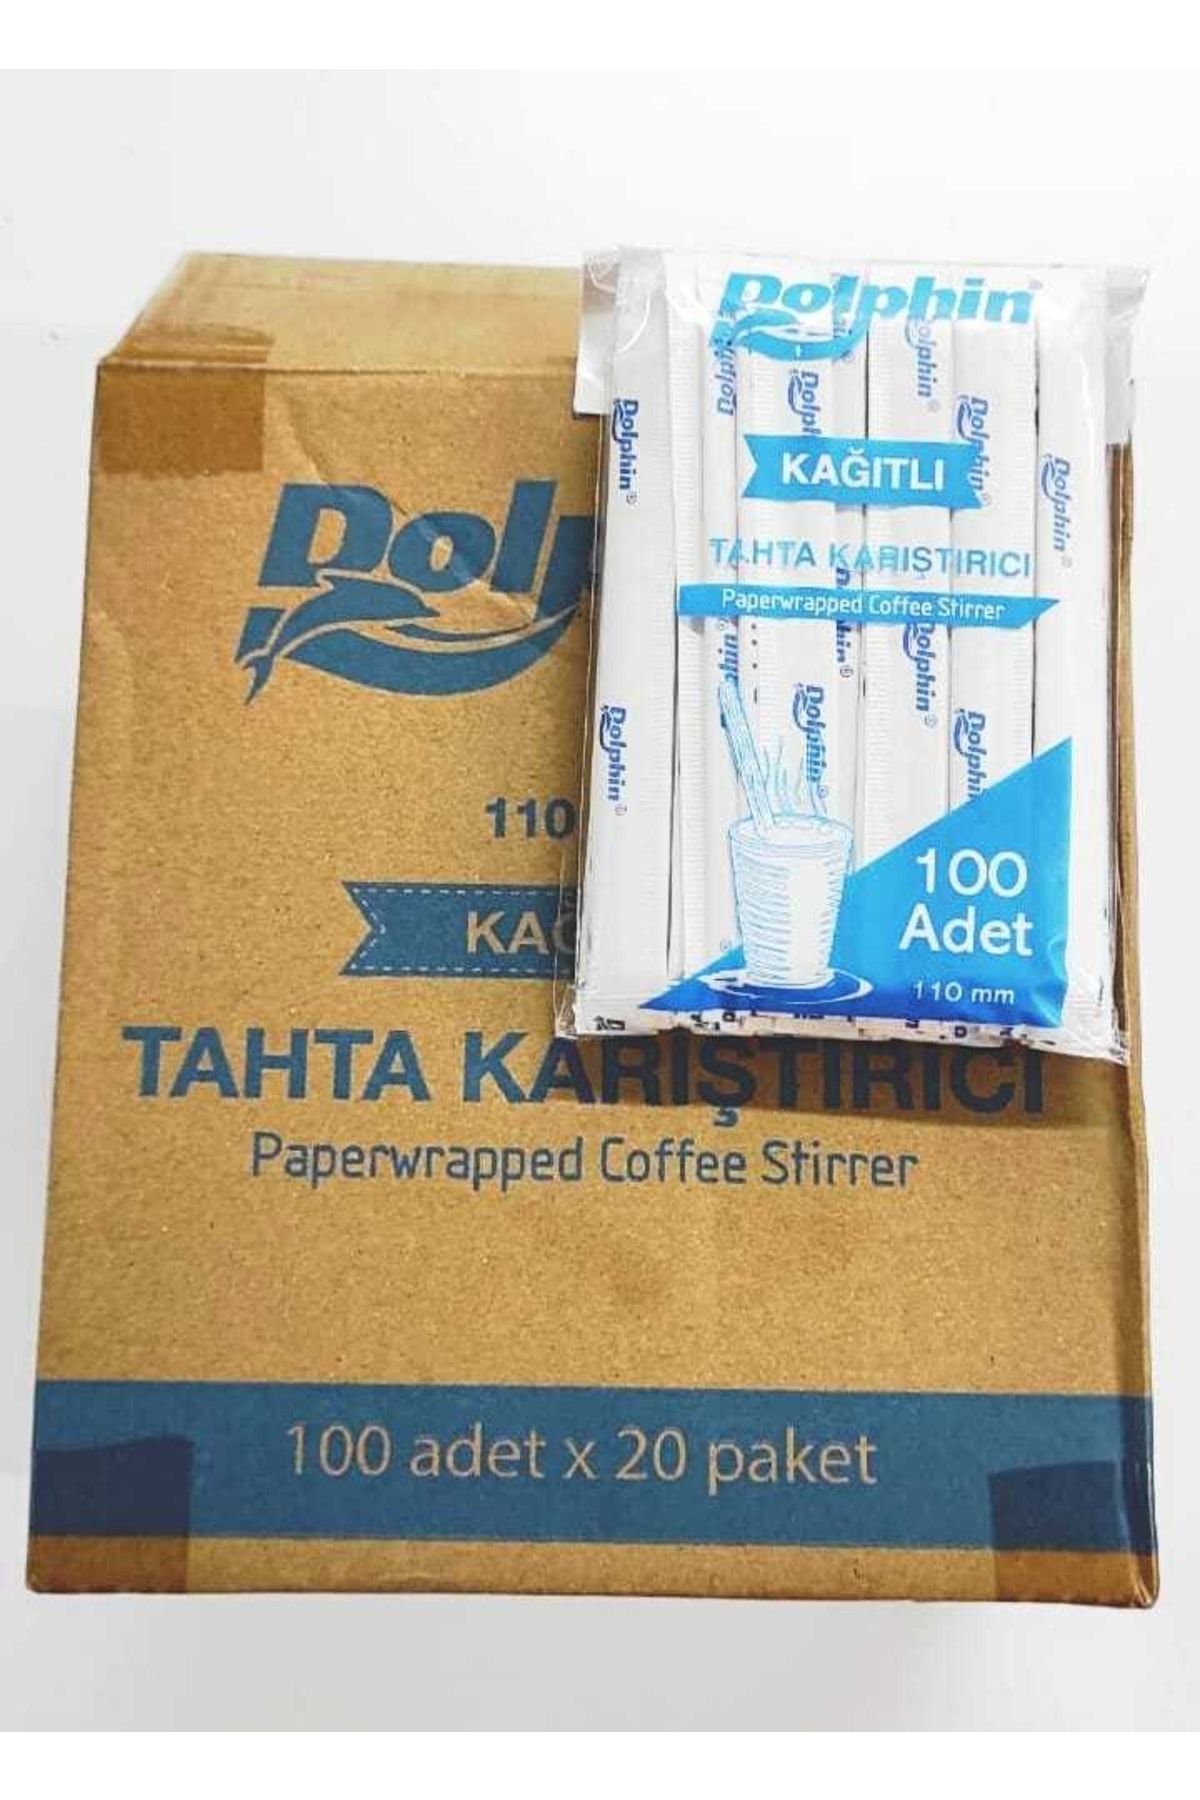 Dolphin Kağıtlı Tahta Karıştırıcı 20 Paket